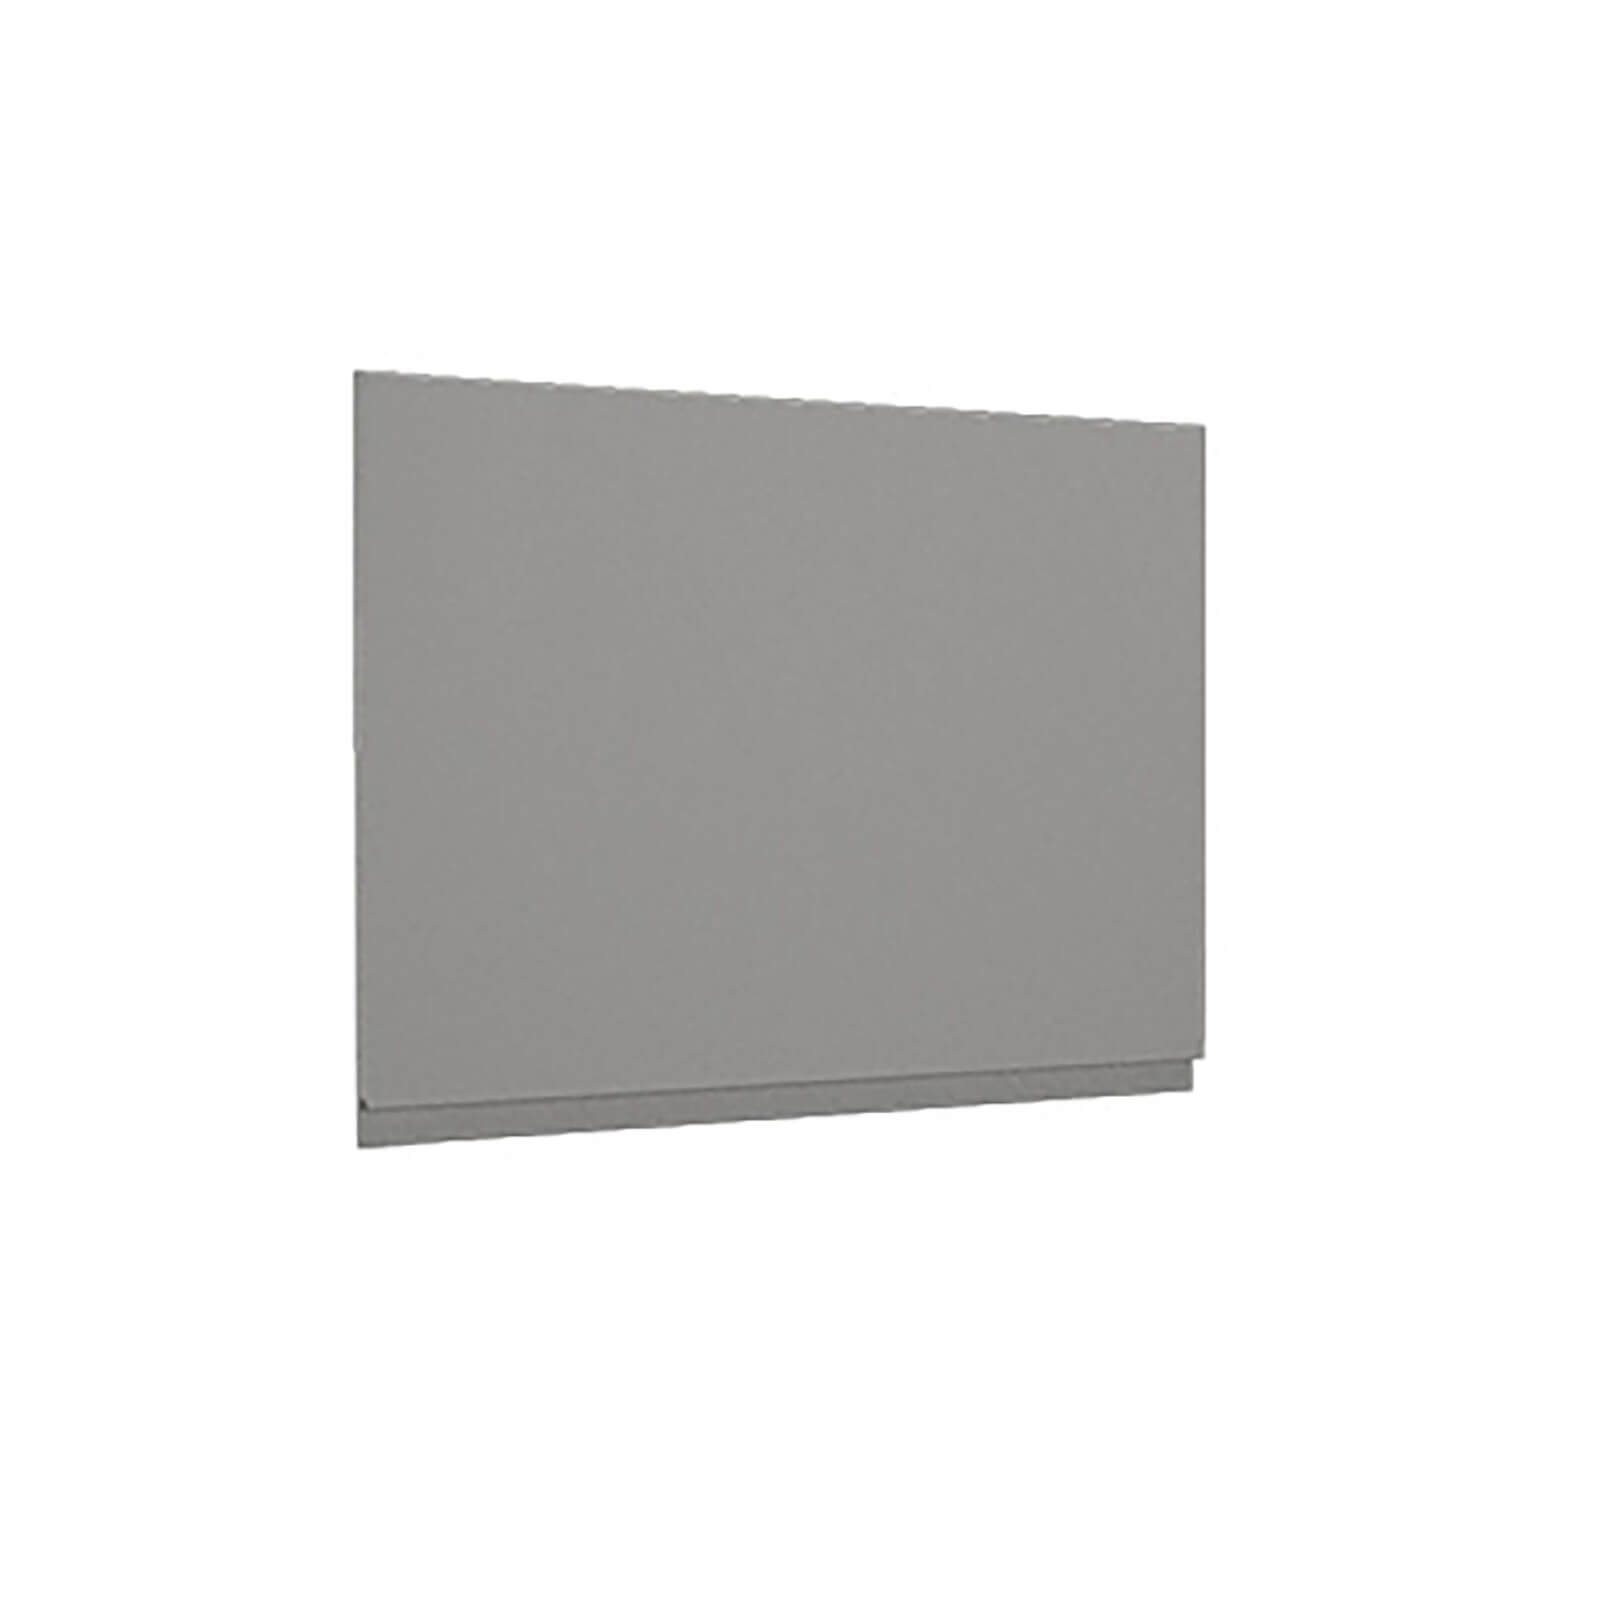 Handleless Grey Gloss Integrated Extractor Door (597x445)